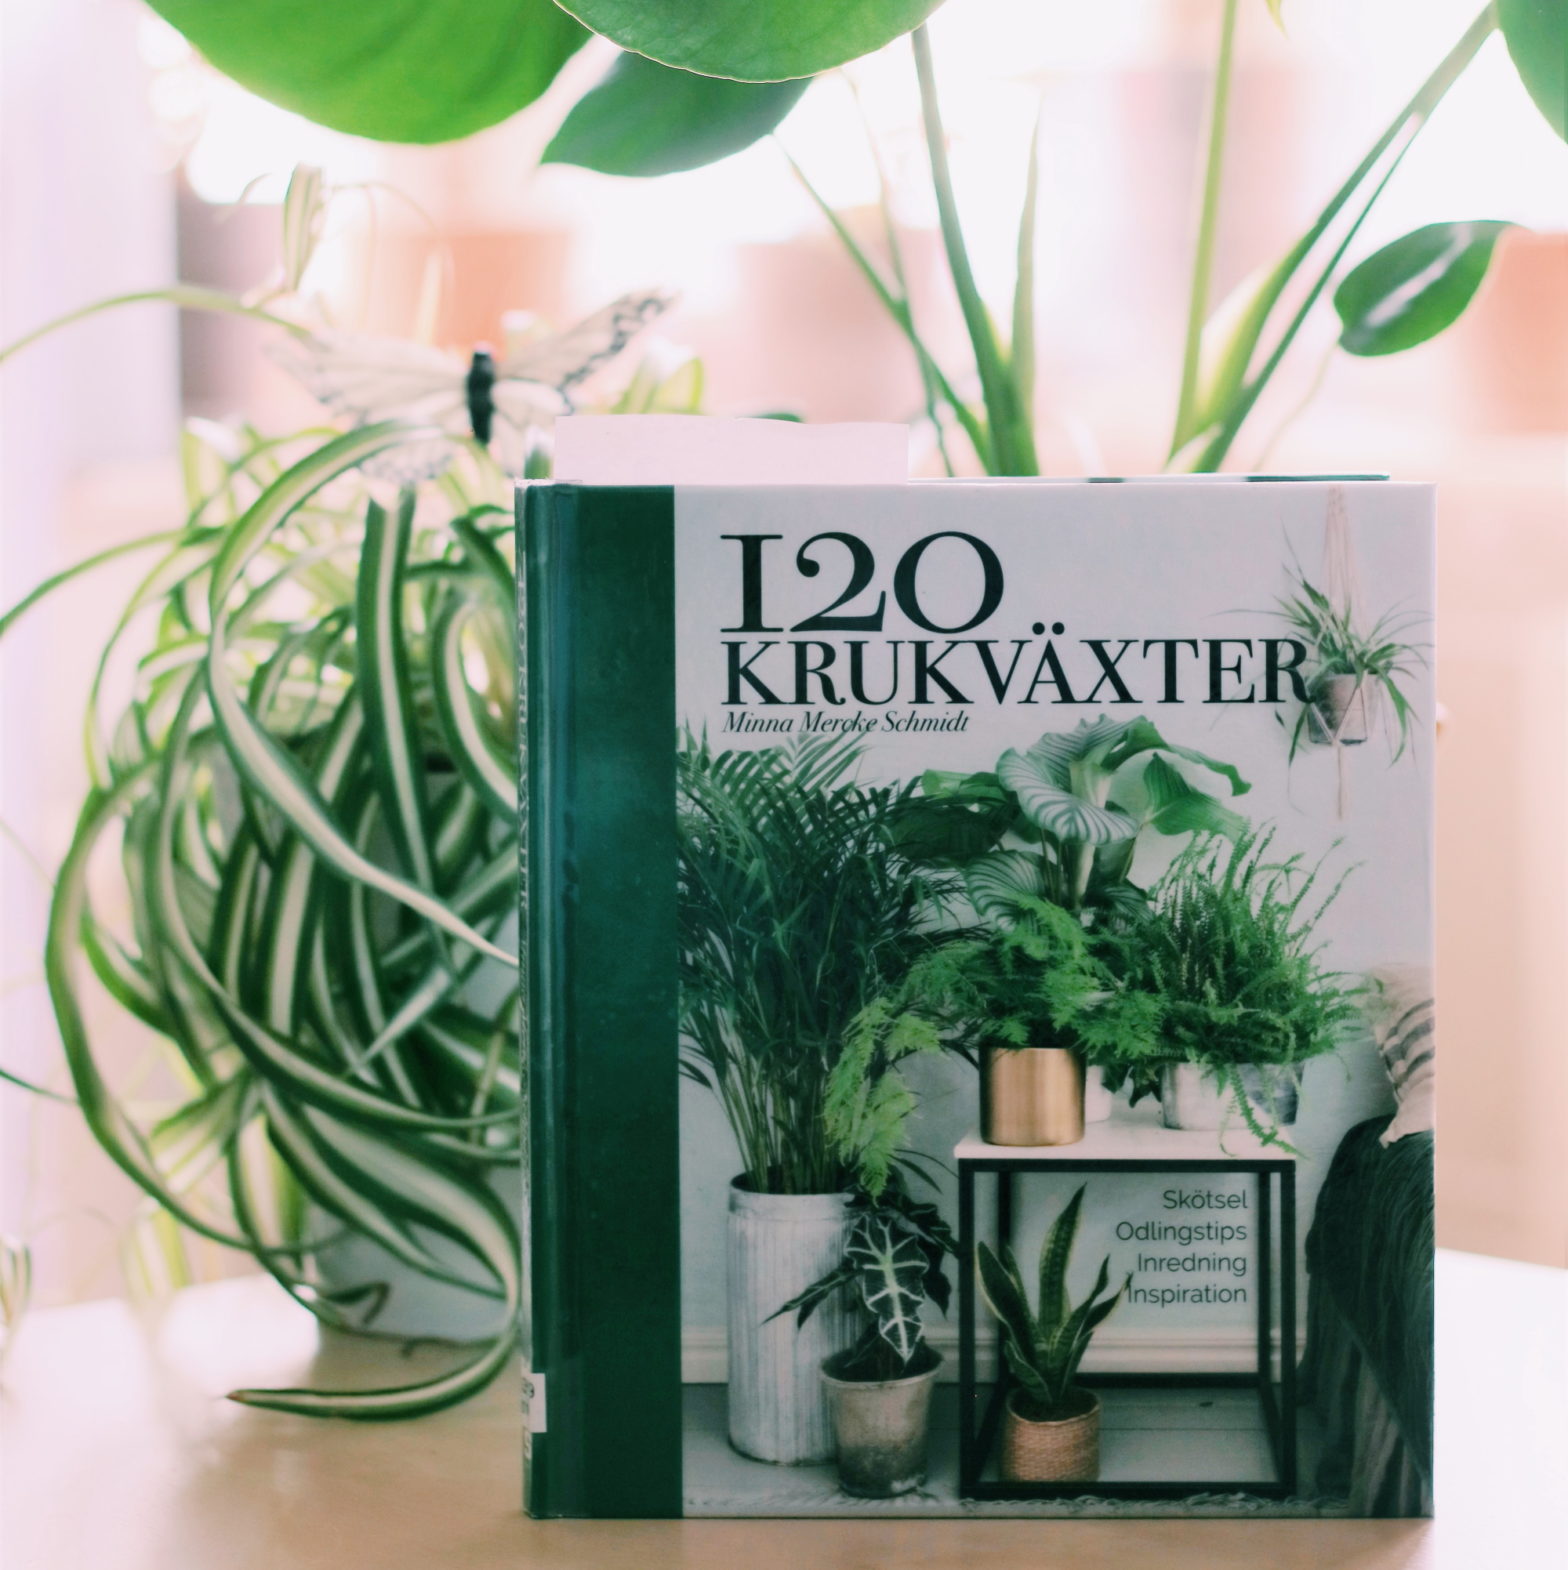 120 krukväxter: skötsel, odlingstips, inredning, inspiration